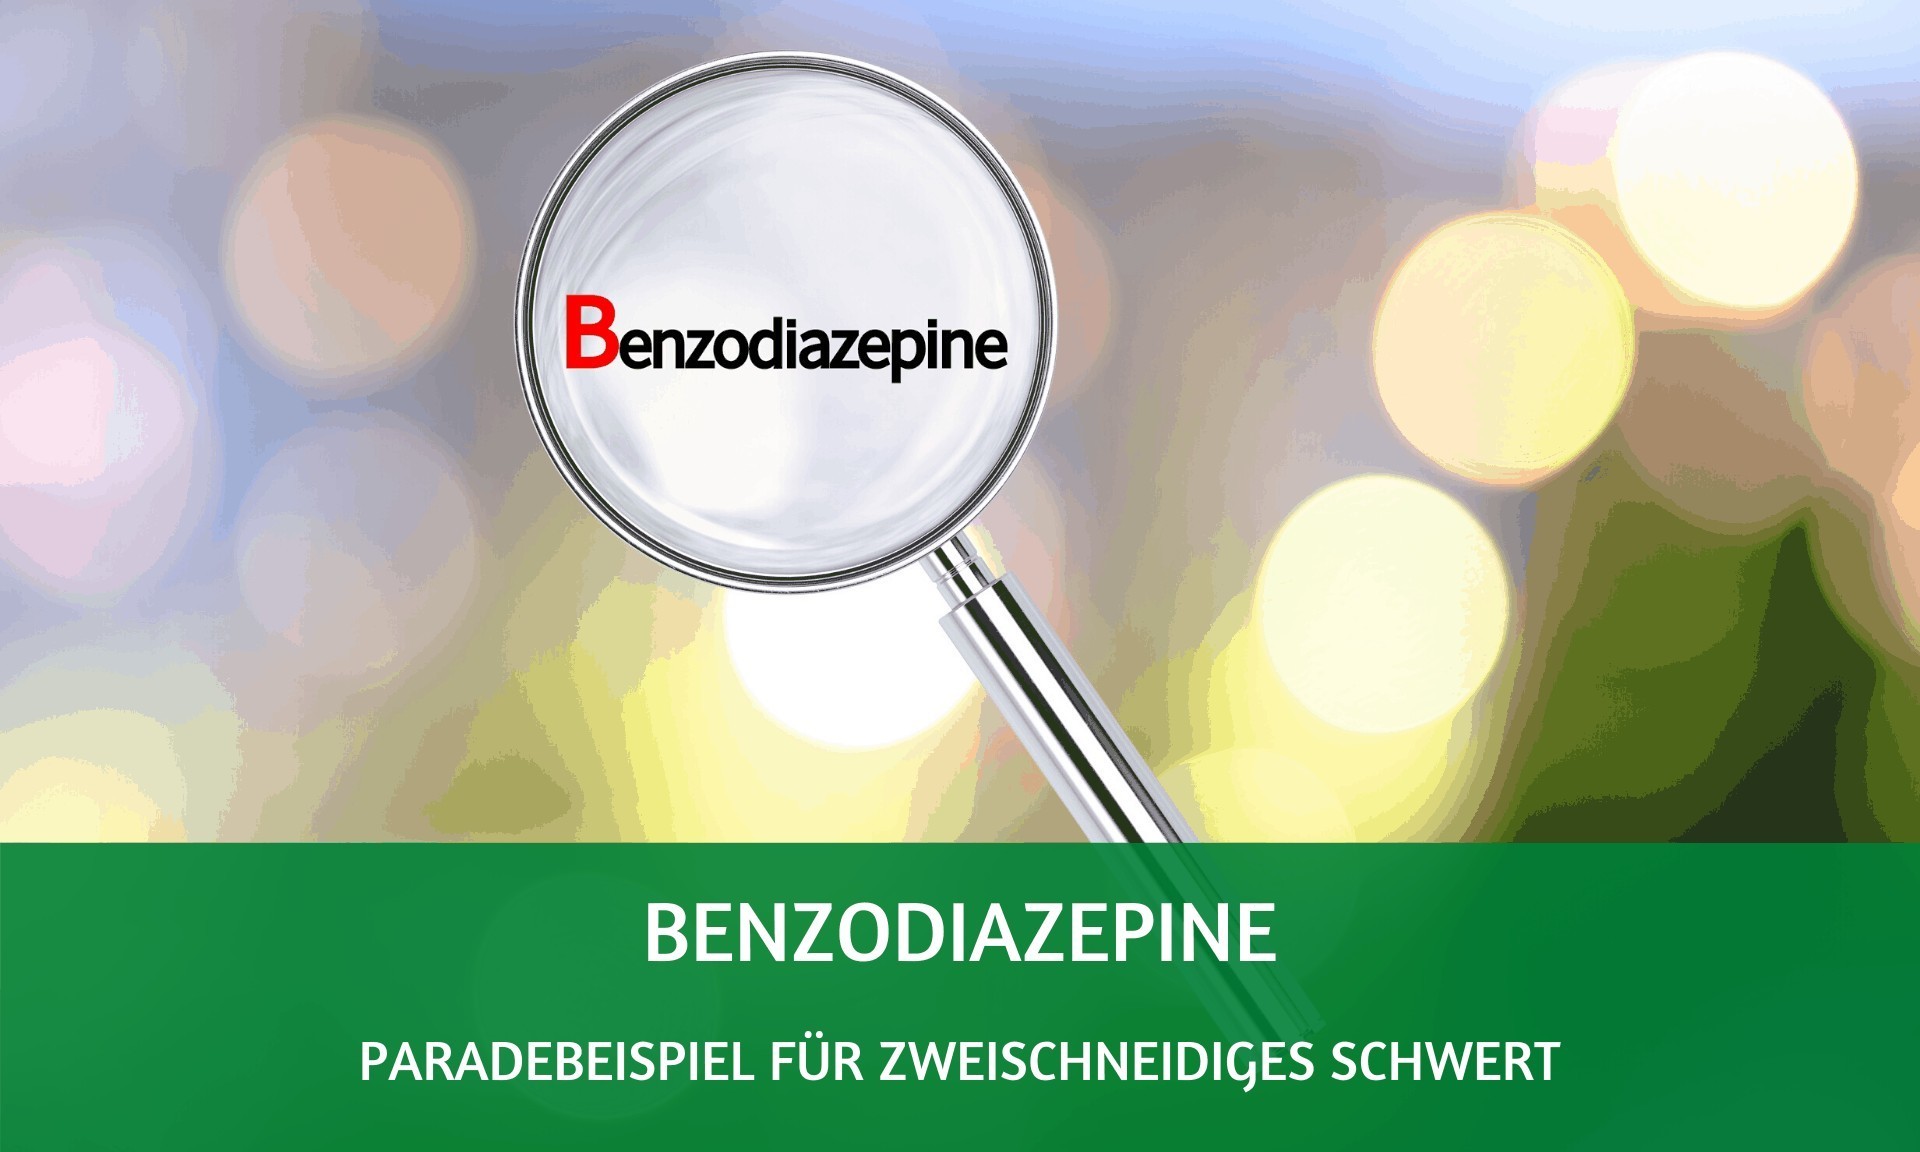 Benzodiazepine: Paradebeispiel für zweischneidiges Schwert